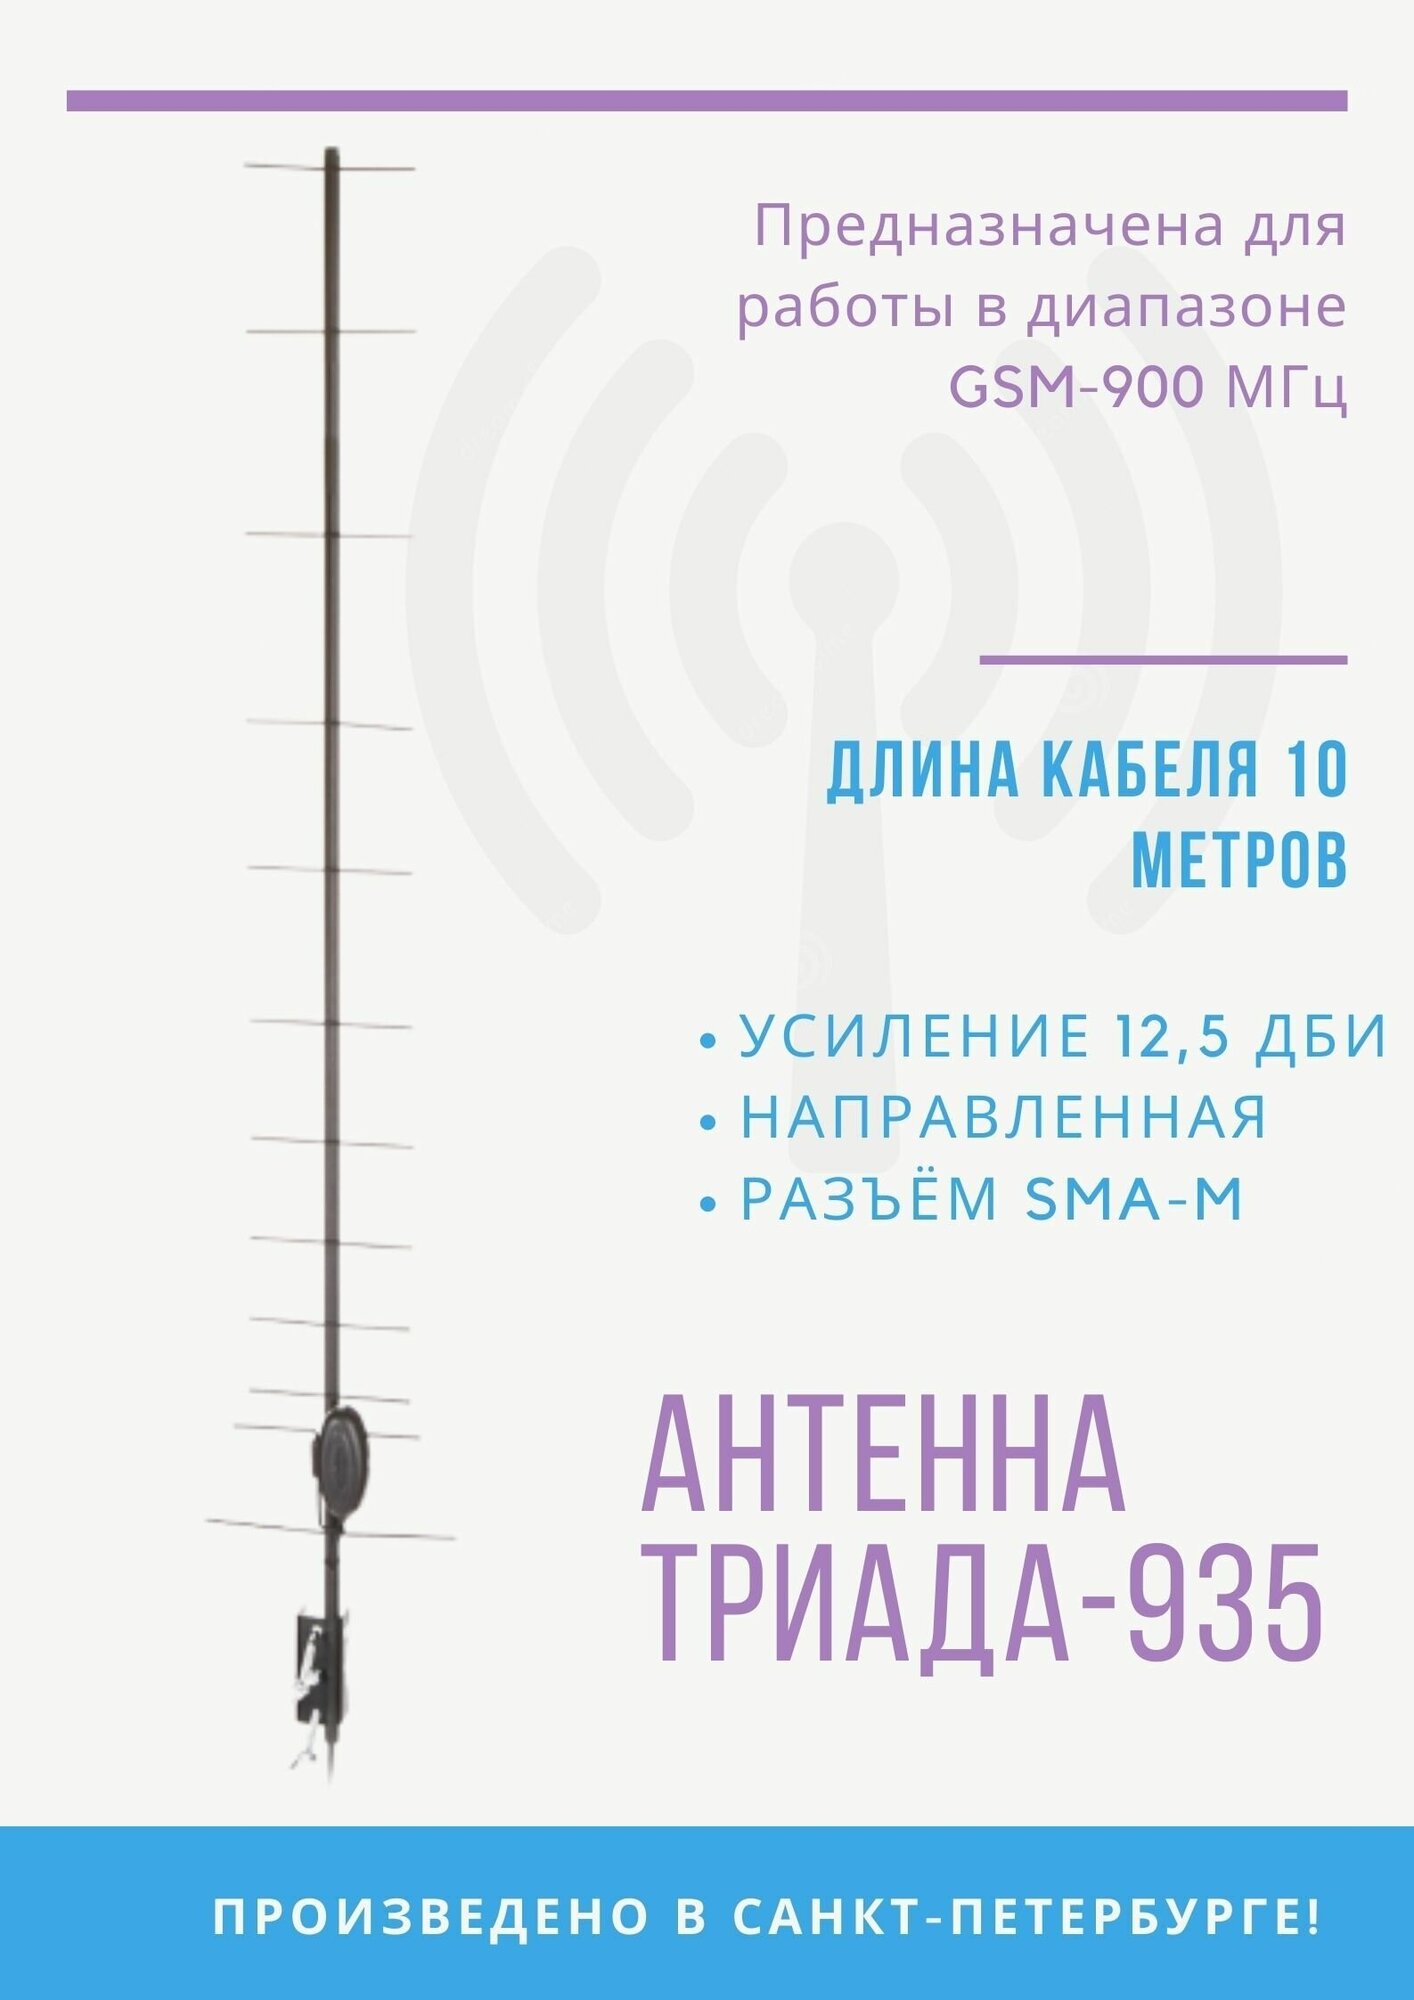 Антенна на кронштейн "Триада-935 SOTA" направленная GSM-900 МГц (125 дБи) кабель RG 58 A/U длина кабеля 10 м разъем SMA